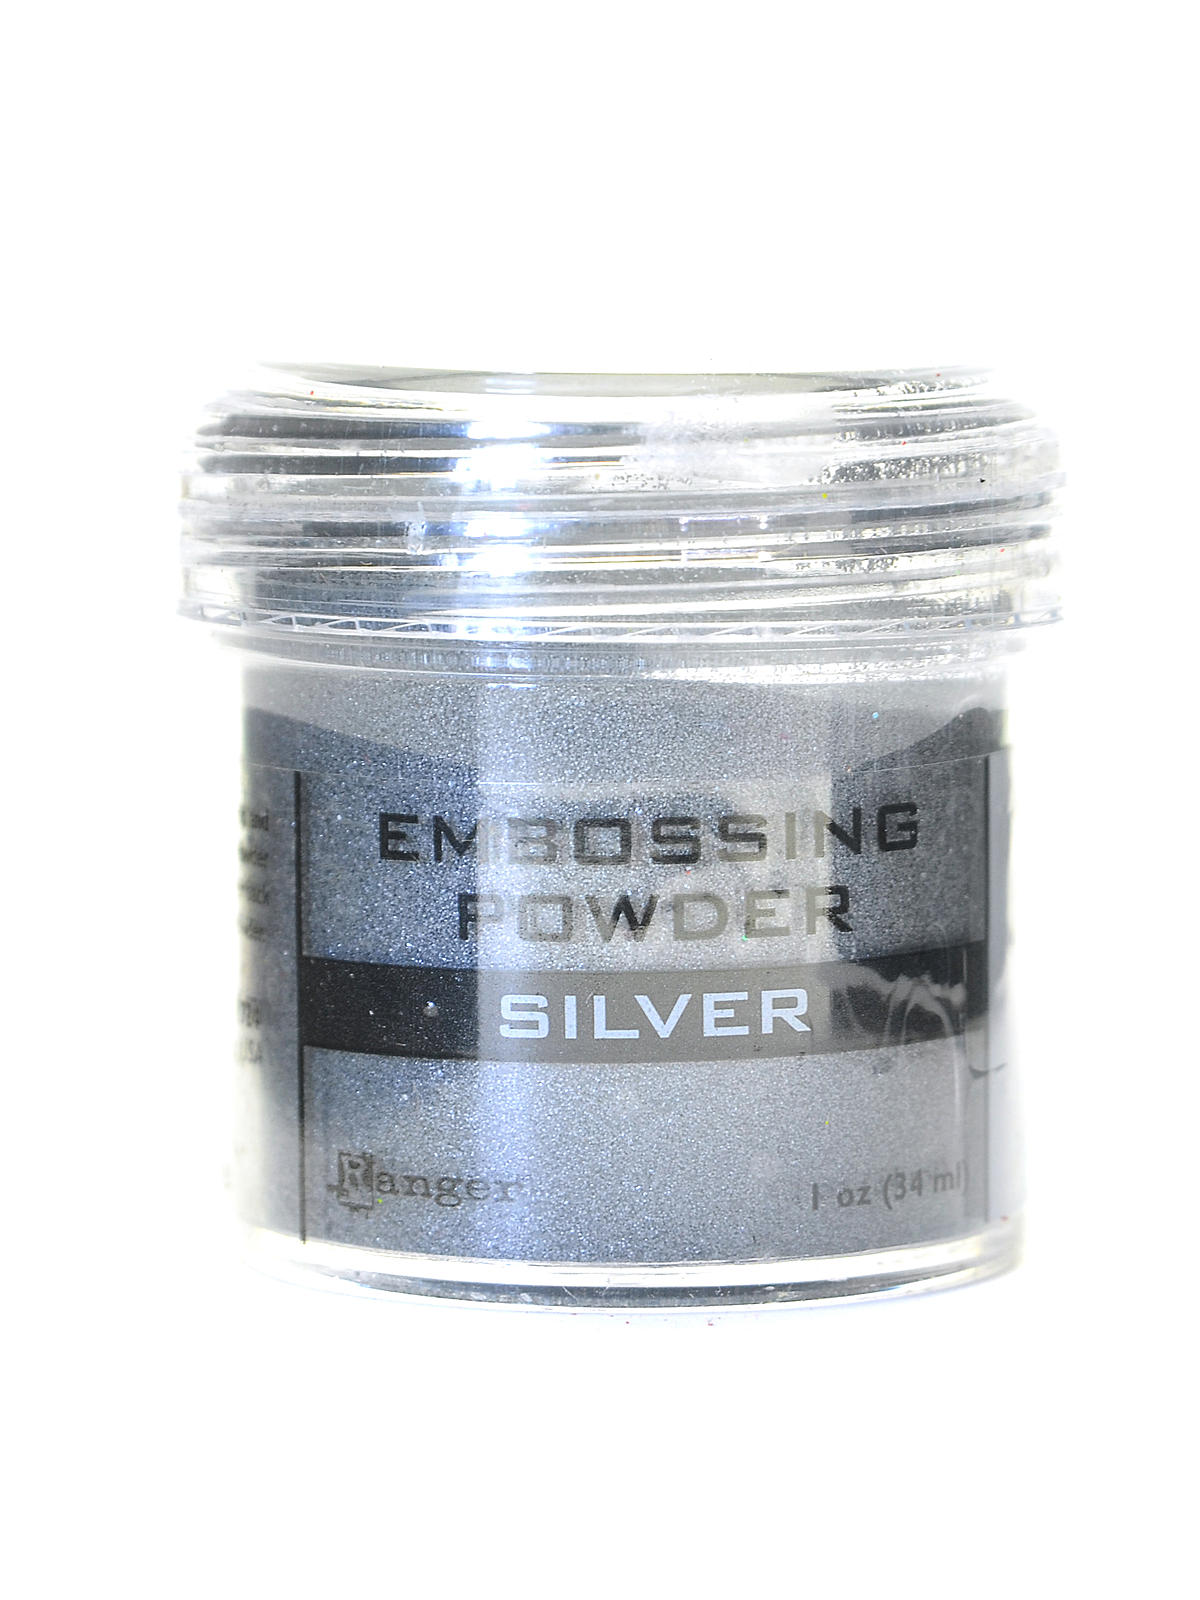 Embossing Powder Silver 1 Oz. Jar